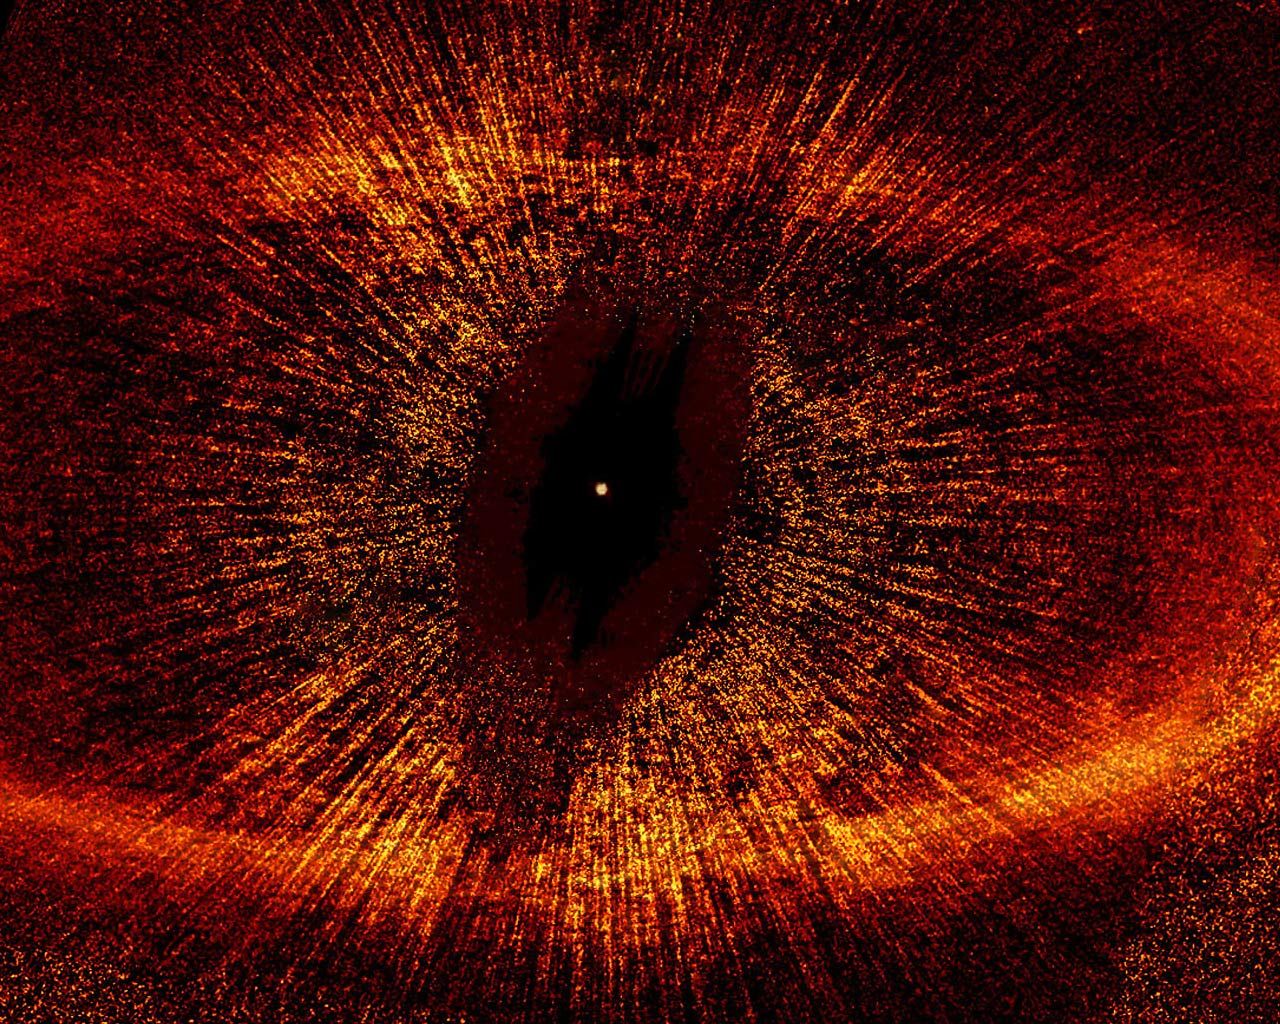 Eye Of Sauron Universe - 1280x1024 Wallpaper 